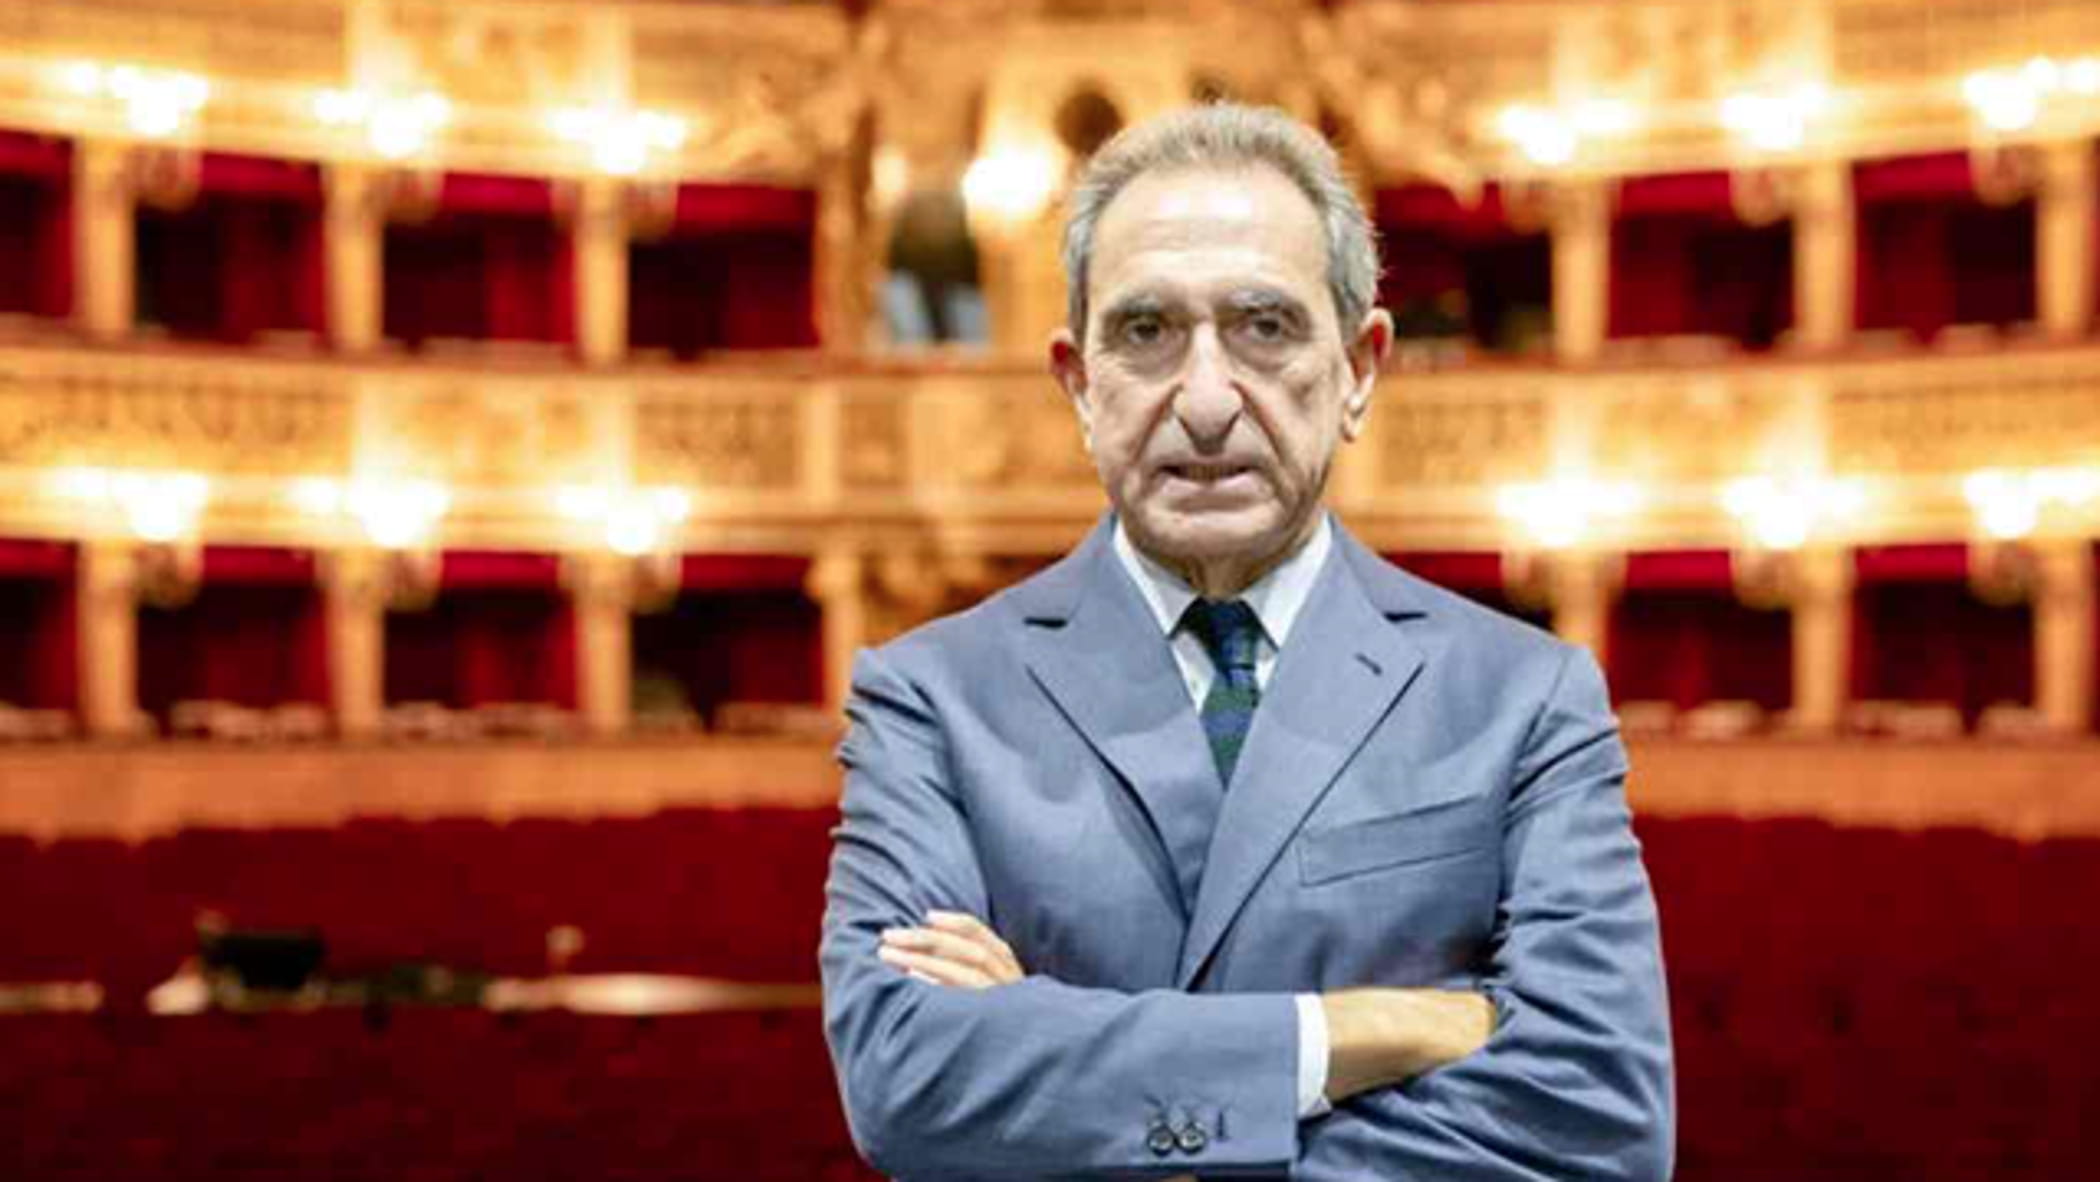 Carlo Fuortes condannato a un anno e 4 mesi per la morte di Oberdan Varani, l’operaio caduto al Teatro Opera. La difesa: “Sconcertante”